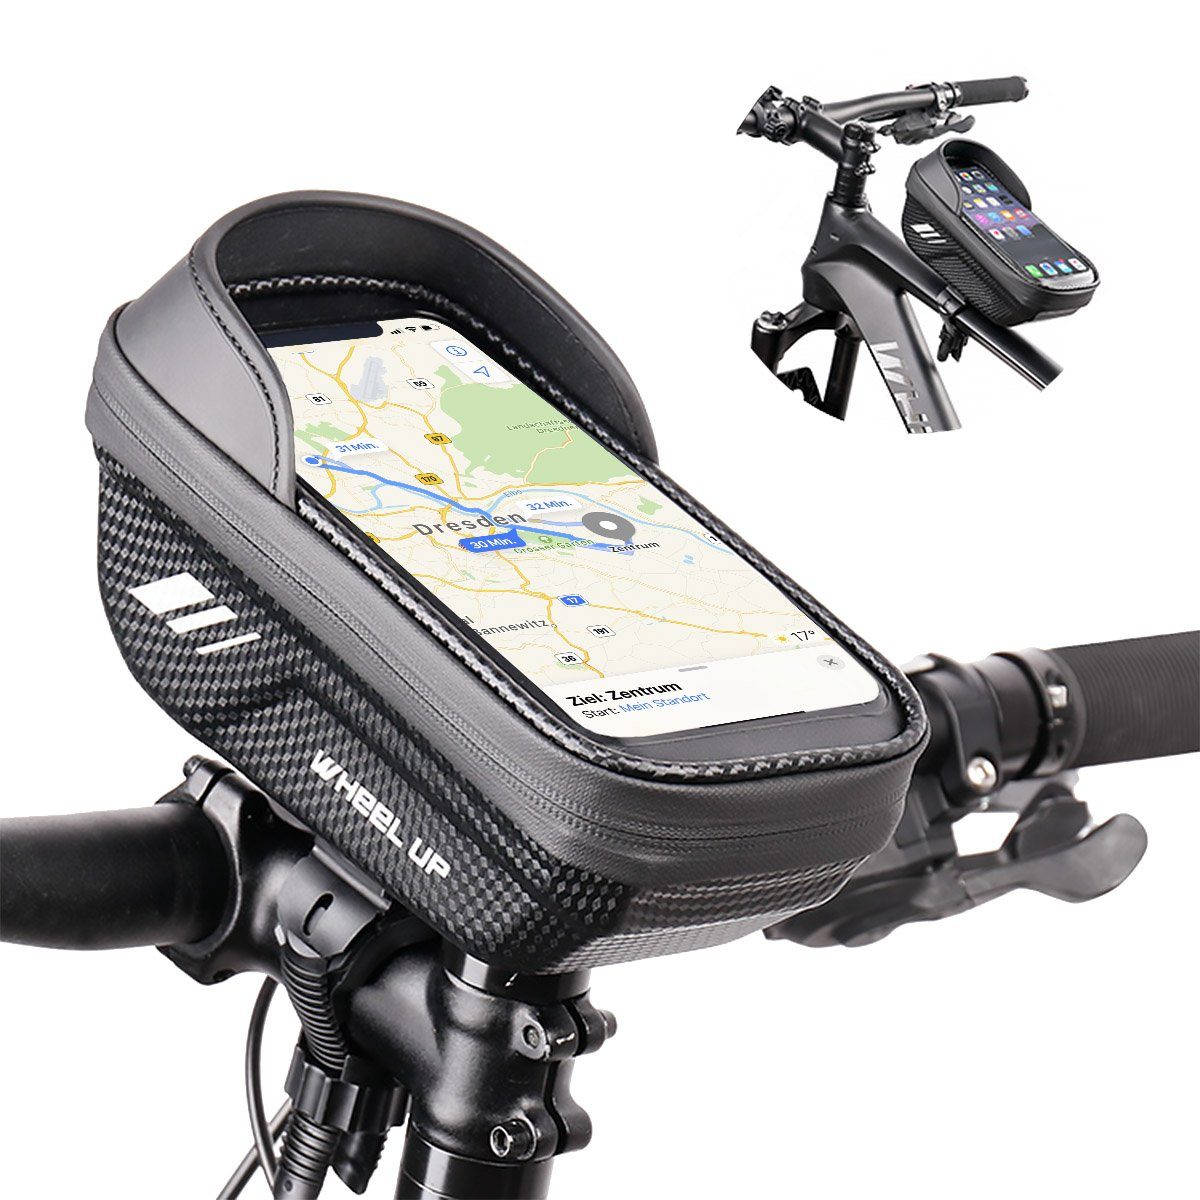 MidGard Fahrradtasche Multifunktions-Fahrrad-Rahmentasche, Lenkertasche wasserabweisend